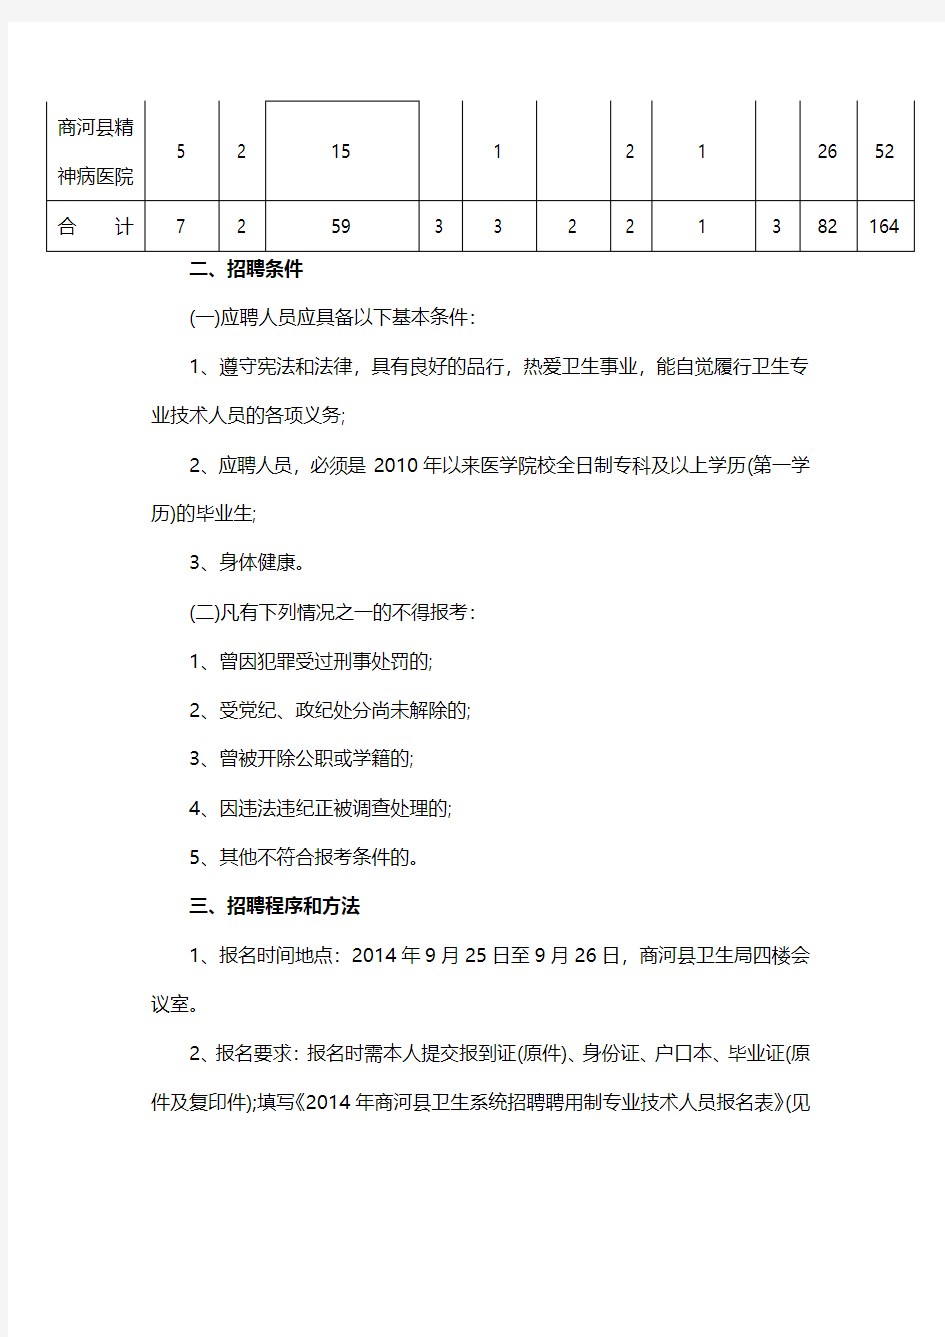 2014年山东商河县卫生系统考试职位表